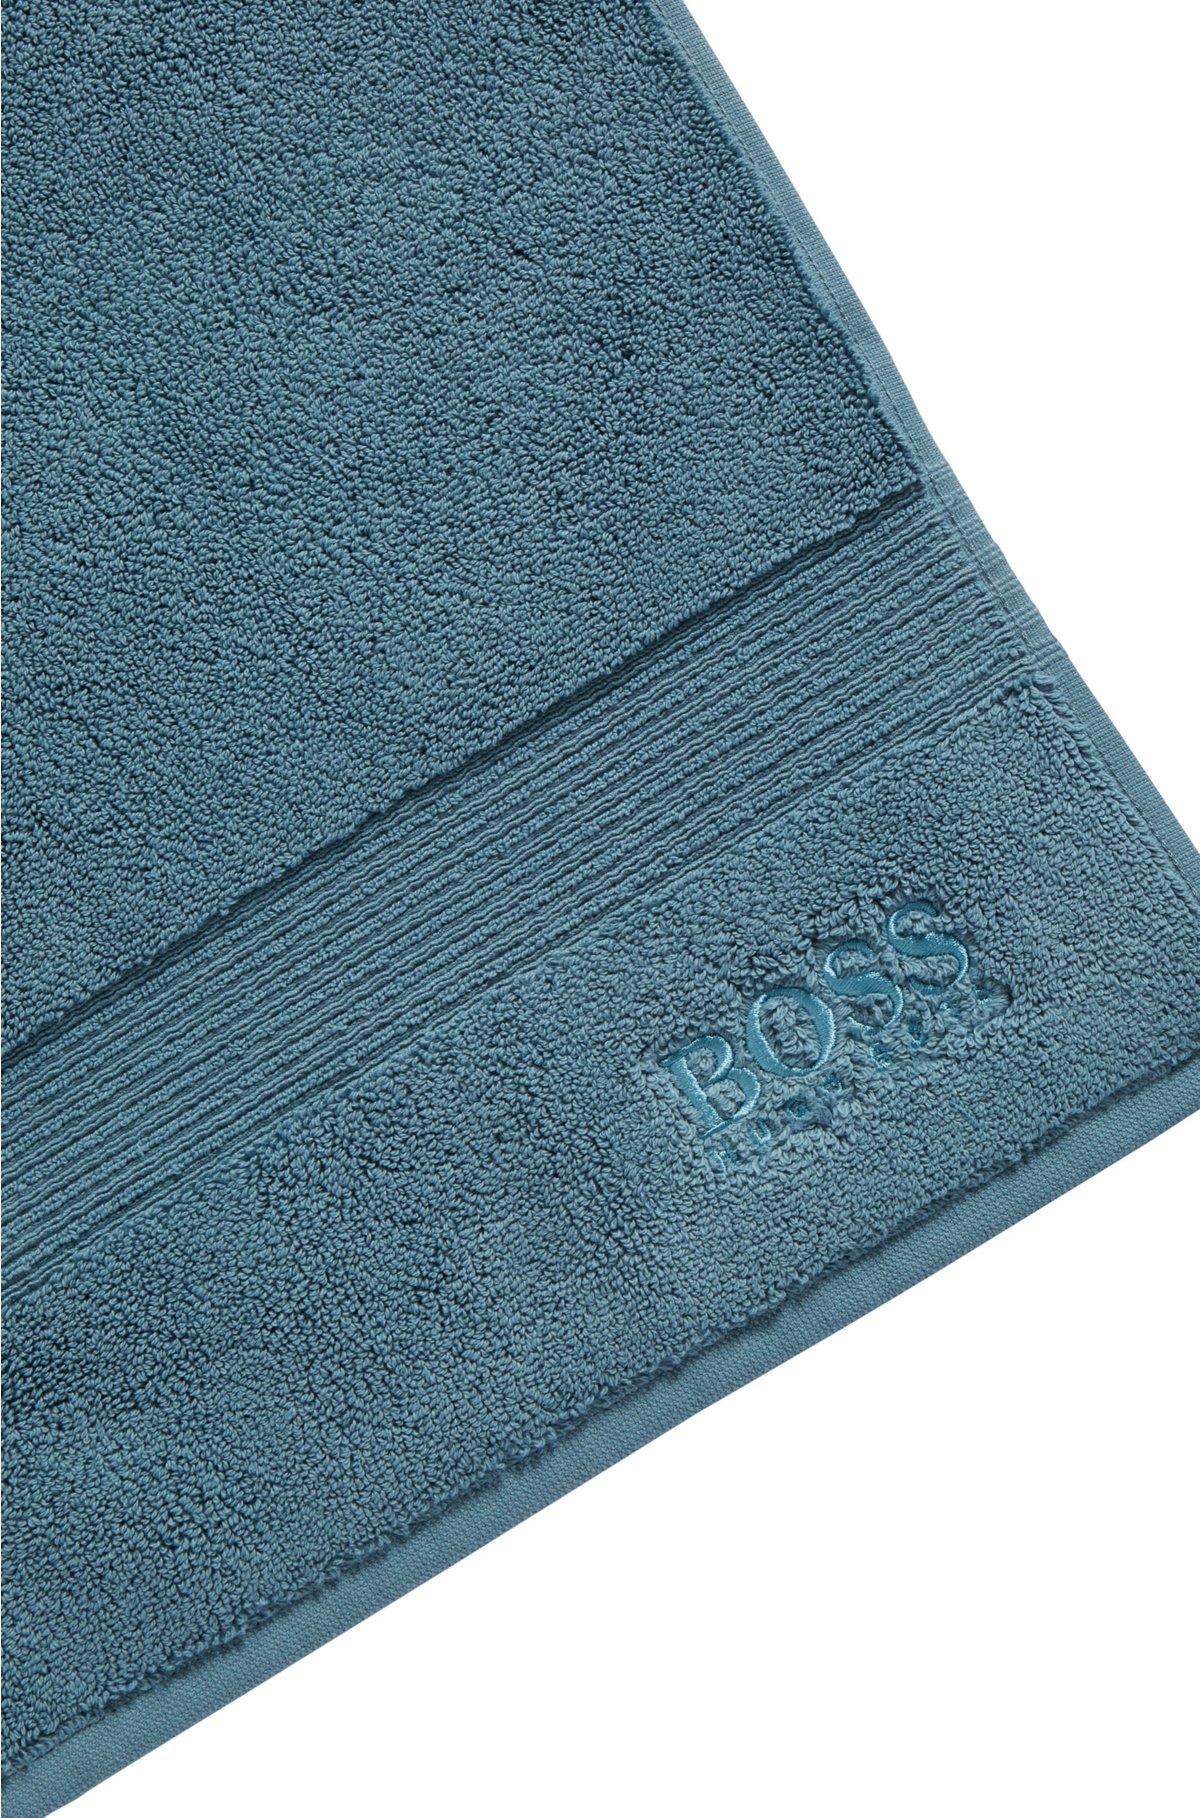 Logo bath mat in Aegean cotton, Blue